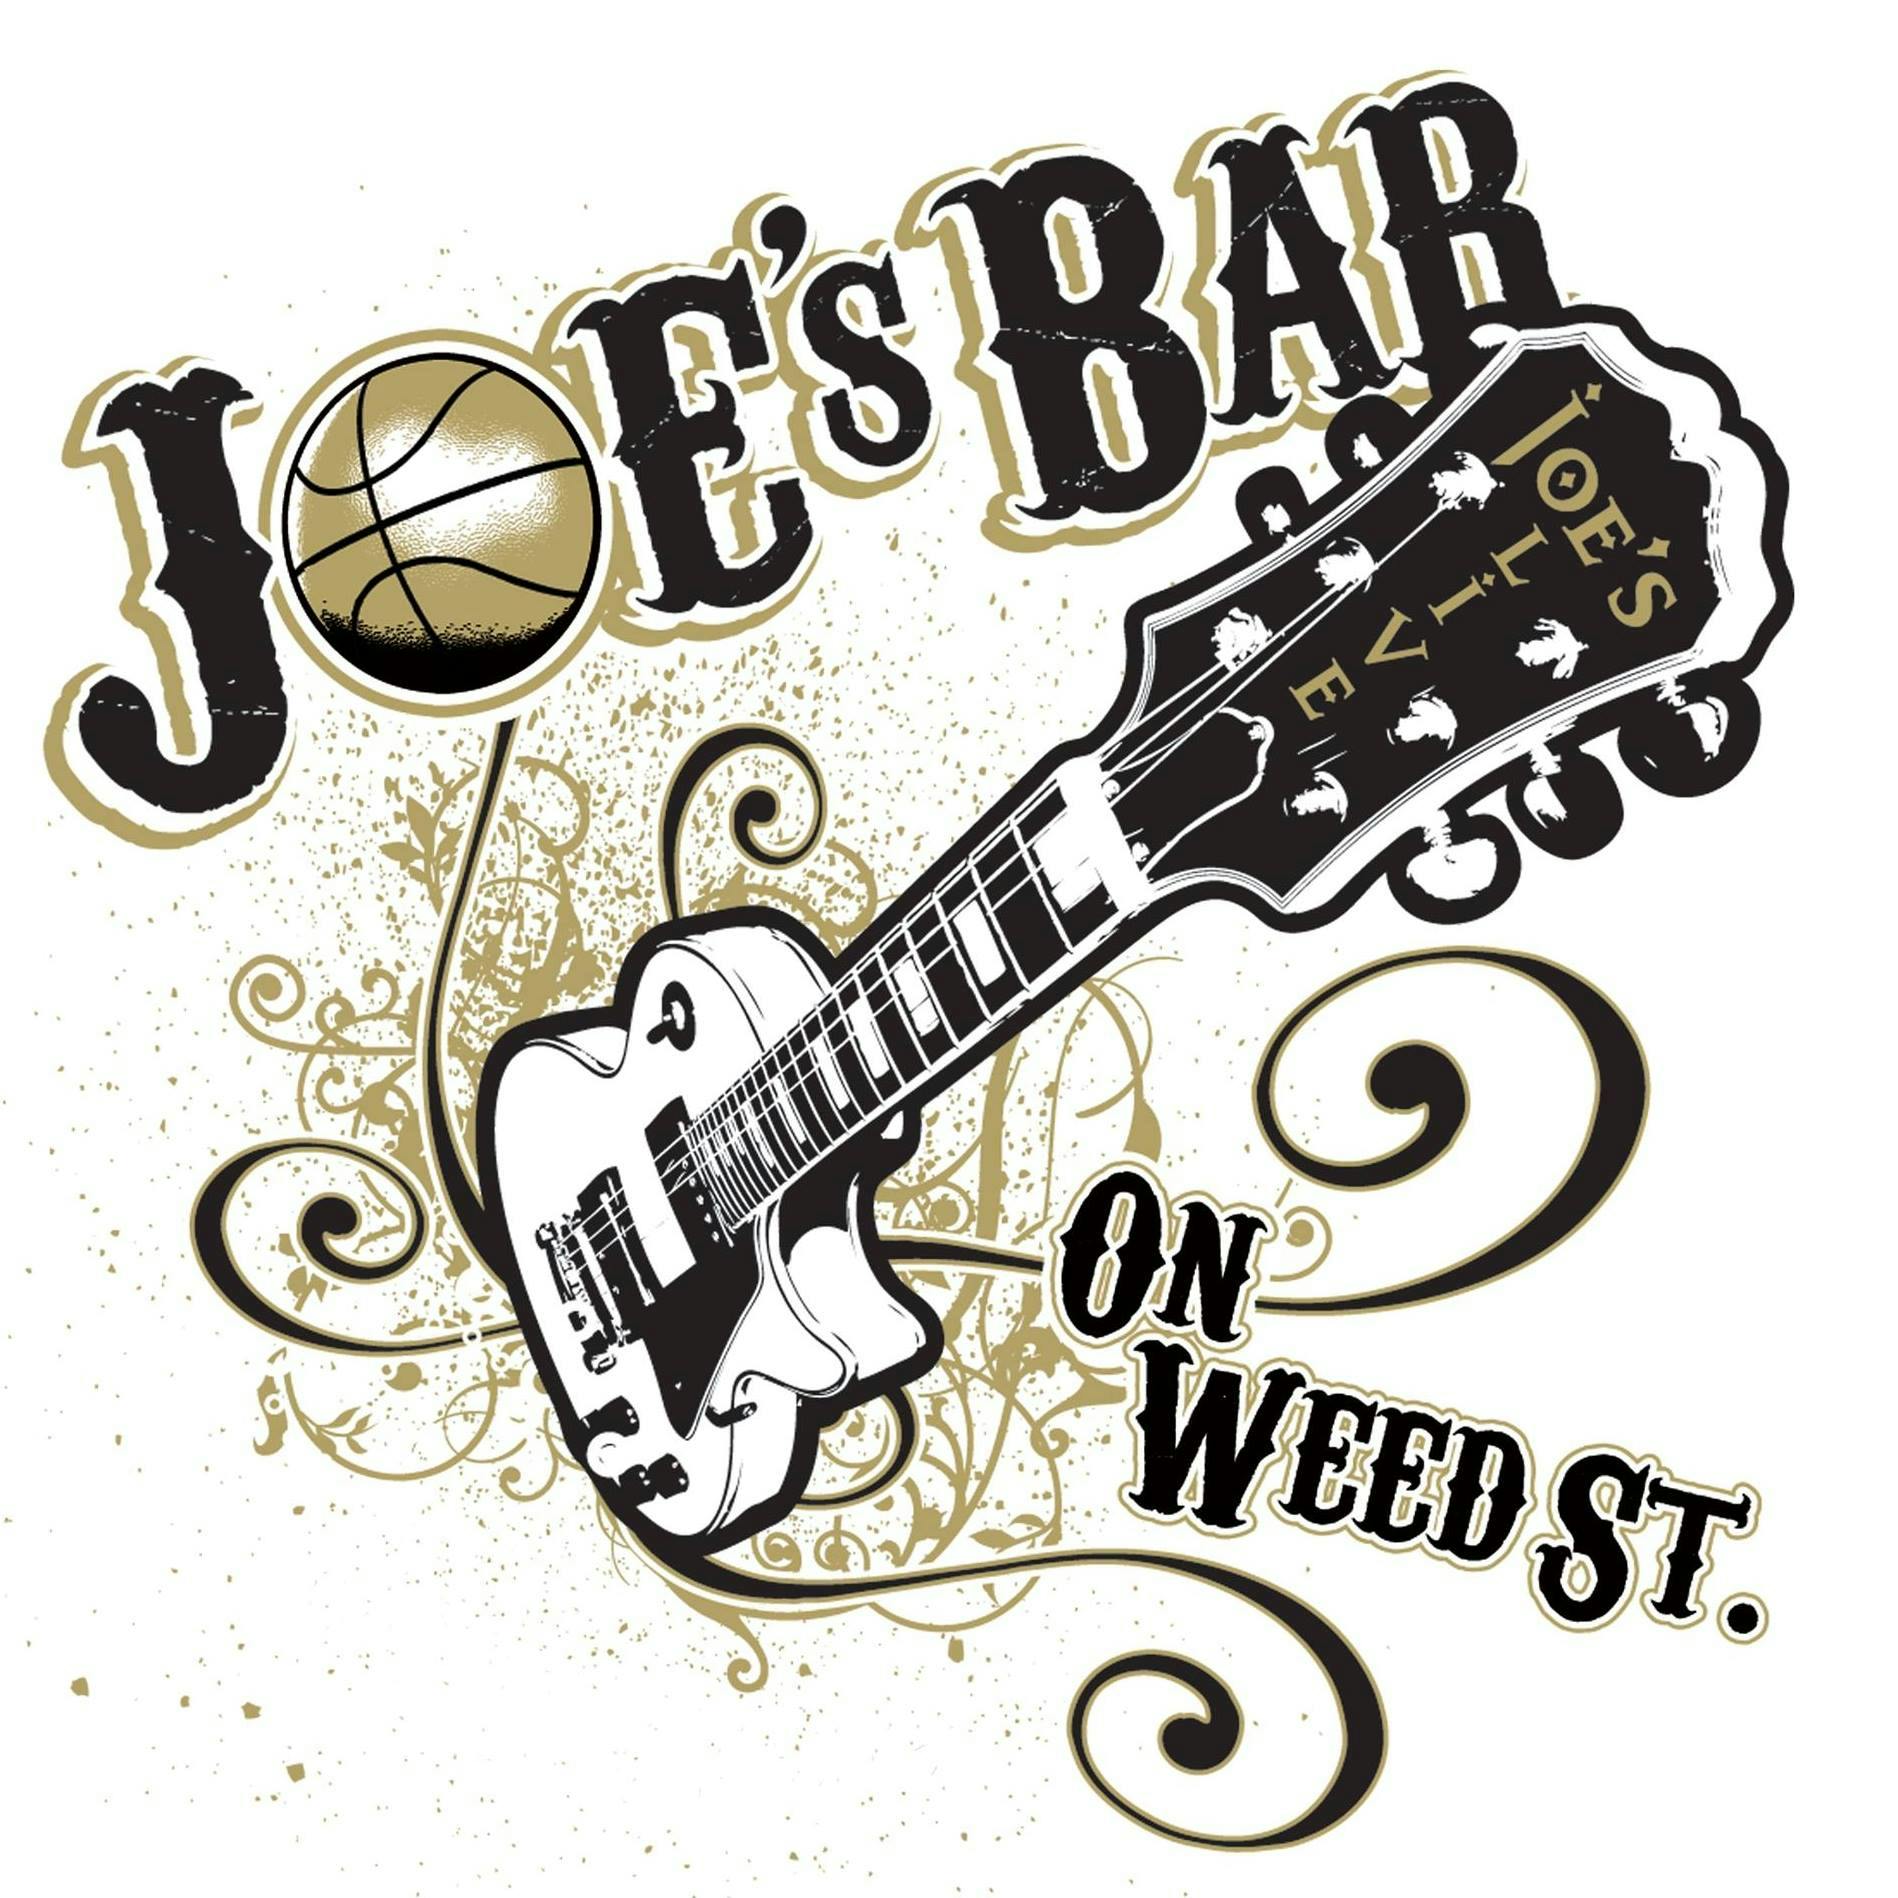 Joe's on Weed St.